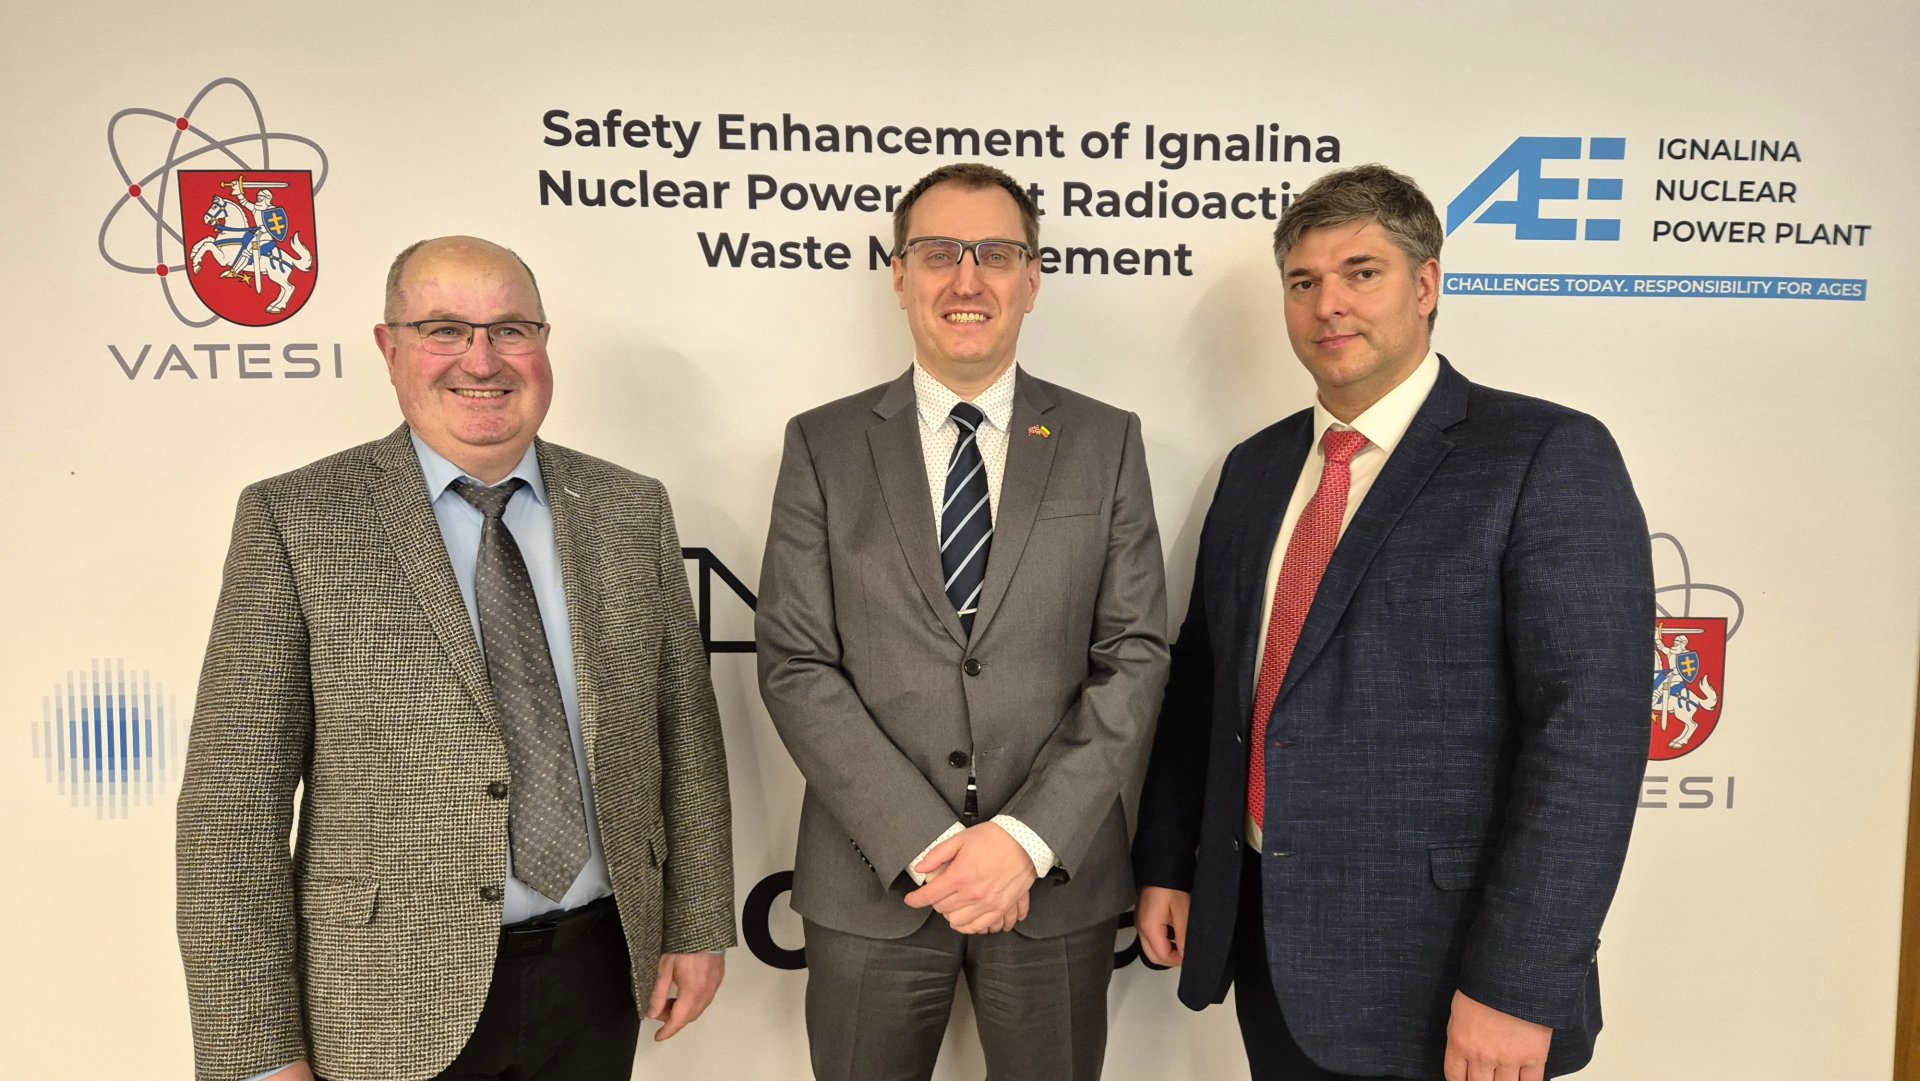 Iš kairės į dešinę:  Vidas Paulikas, VATESI, Radioaktyviųjų atliekų tvarkymo skyriaus vedėjas  Roland Kovács, DSA, Tarptautinės branduolinės saugos ir saugumo departamento vyresnysis patarėjas  Andrius Vyšniauskas, IAE, Infrastruktūros vystymo projektų skyriaus projekto vadovas